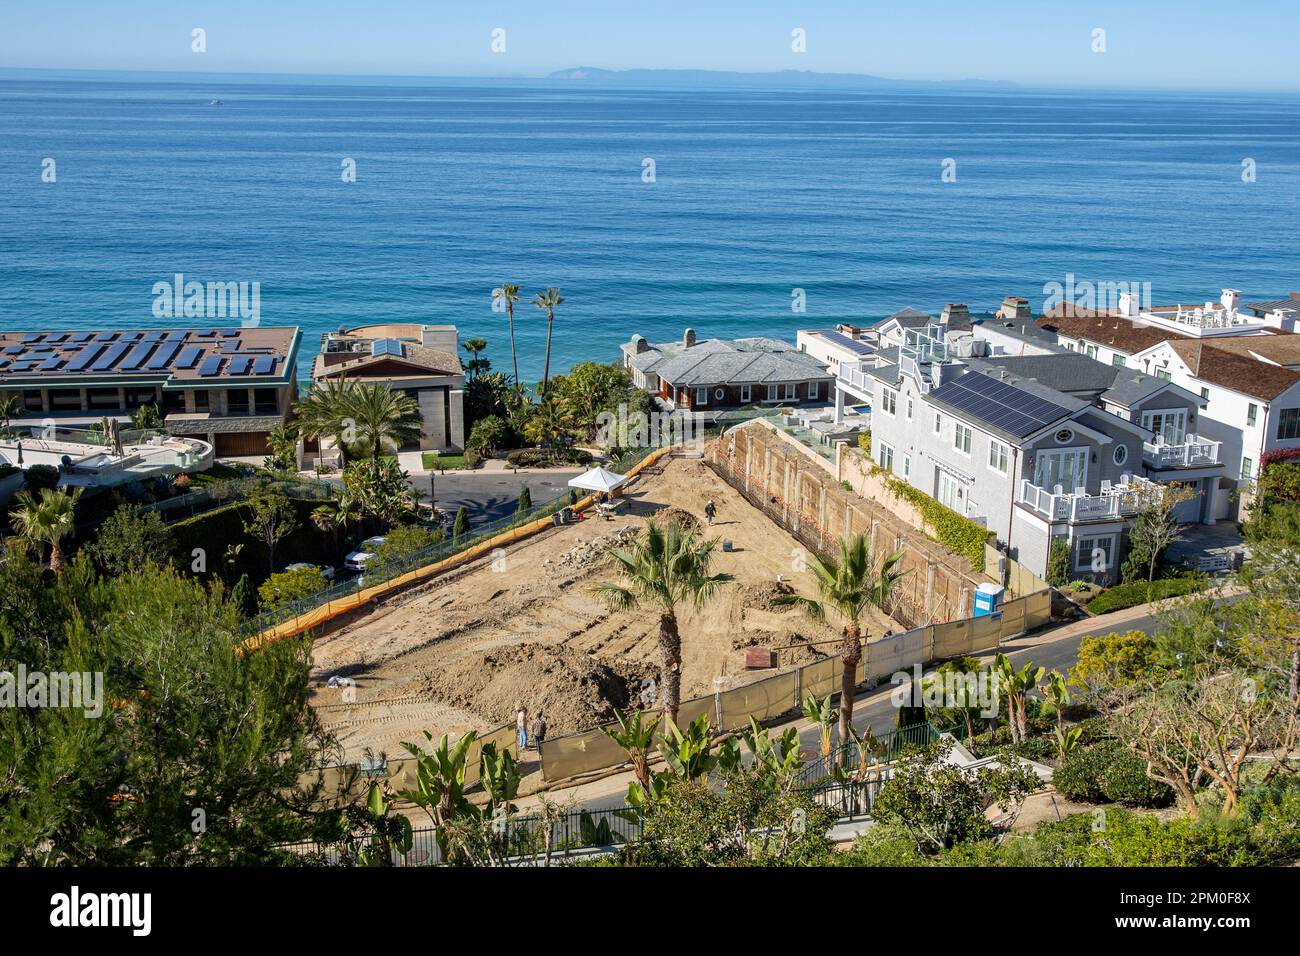 New Pacific Coast maison de luxe construction excavation et maisons de vacances le long de la plage de Rens à Dana point, Orange County, Californie du Sud. Banque D'Images